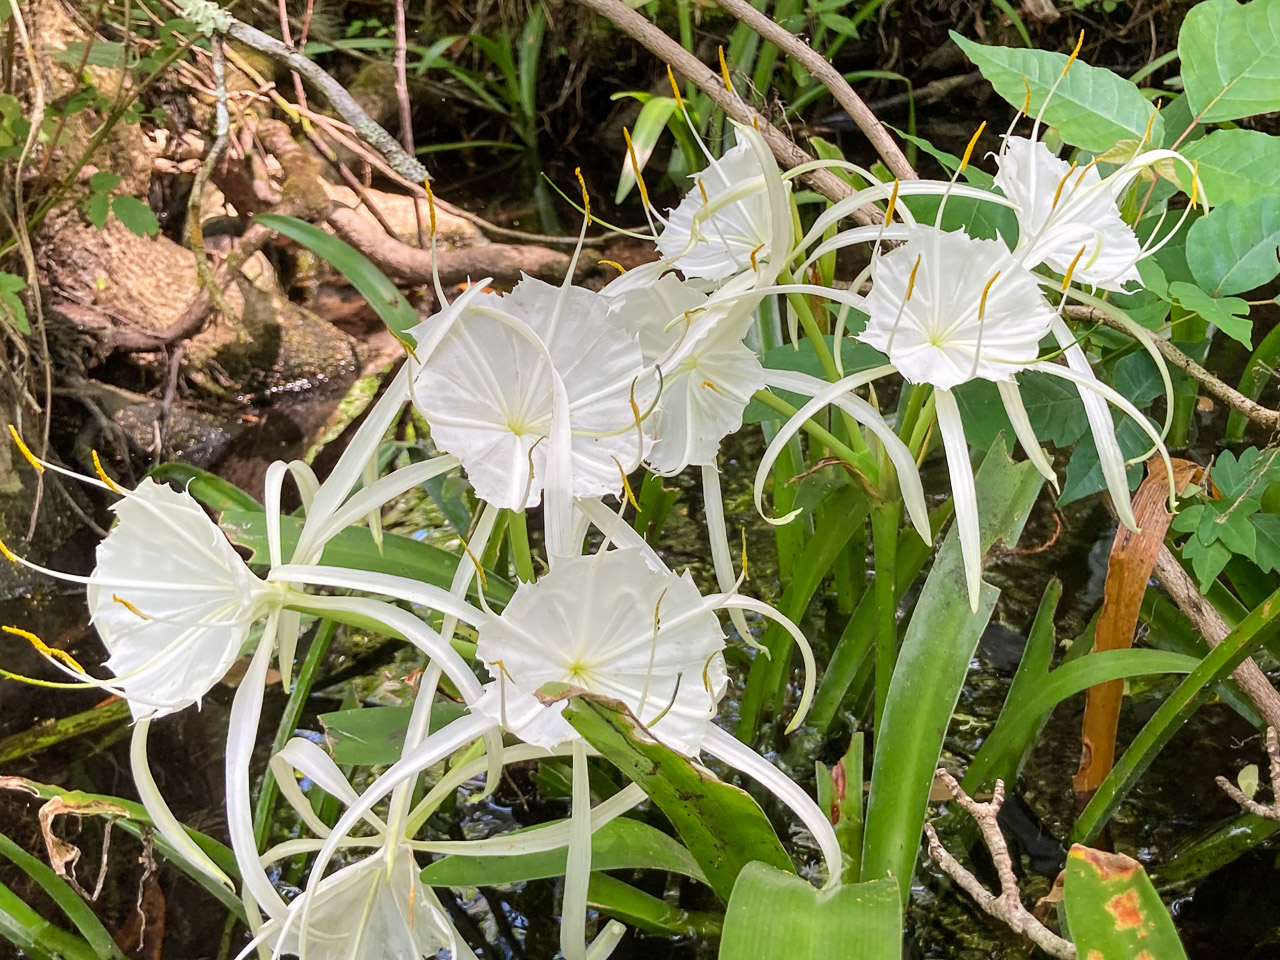 Spider Lilies